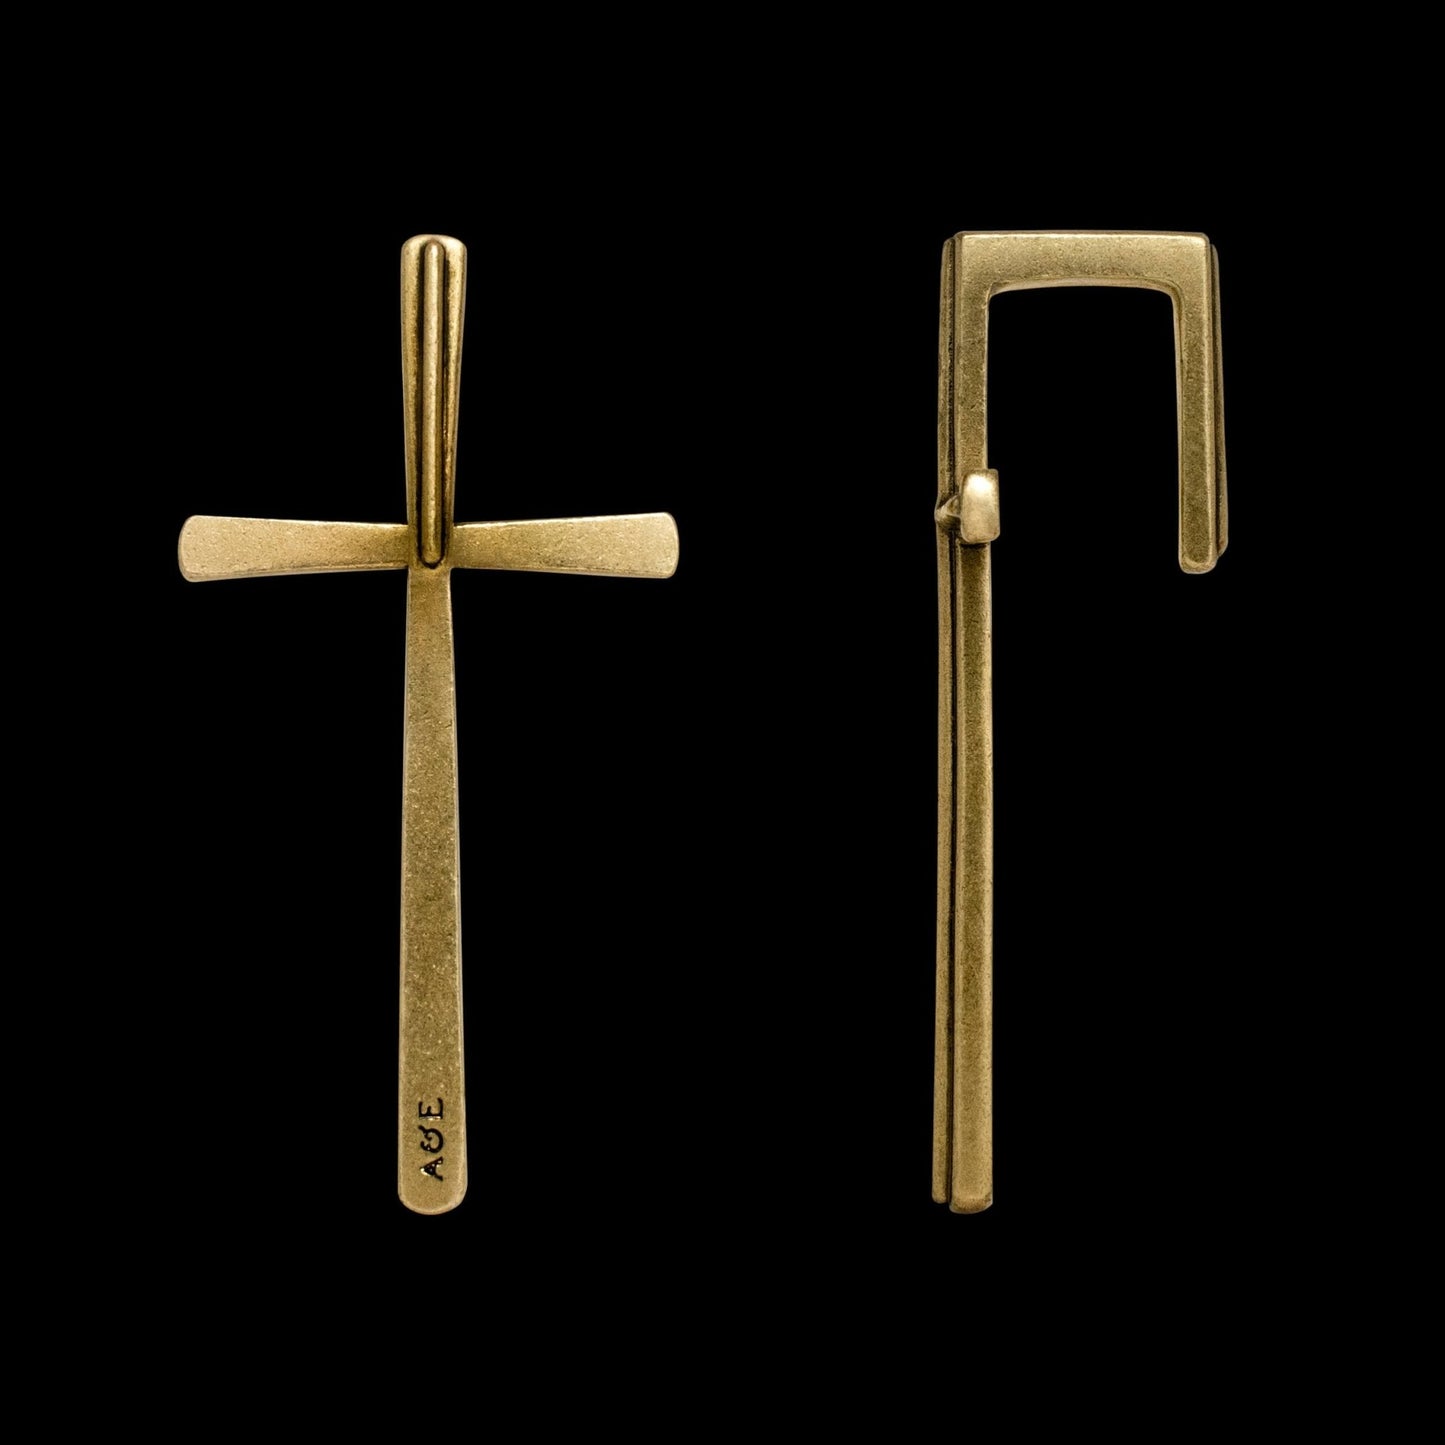 Lucian Cross Hangers - Hangers - Ask and Embla